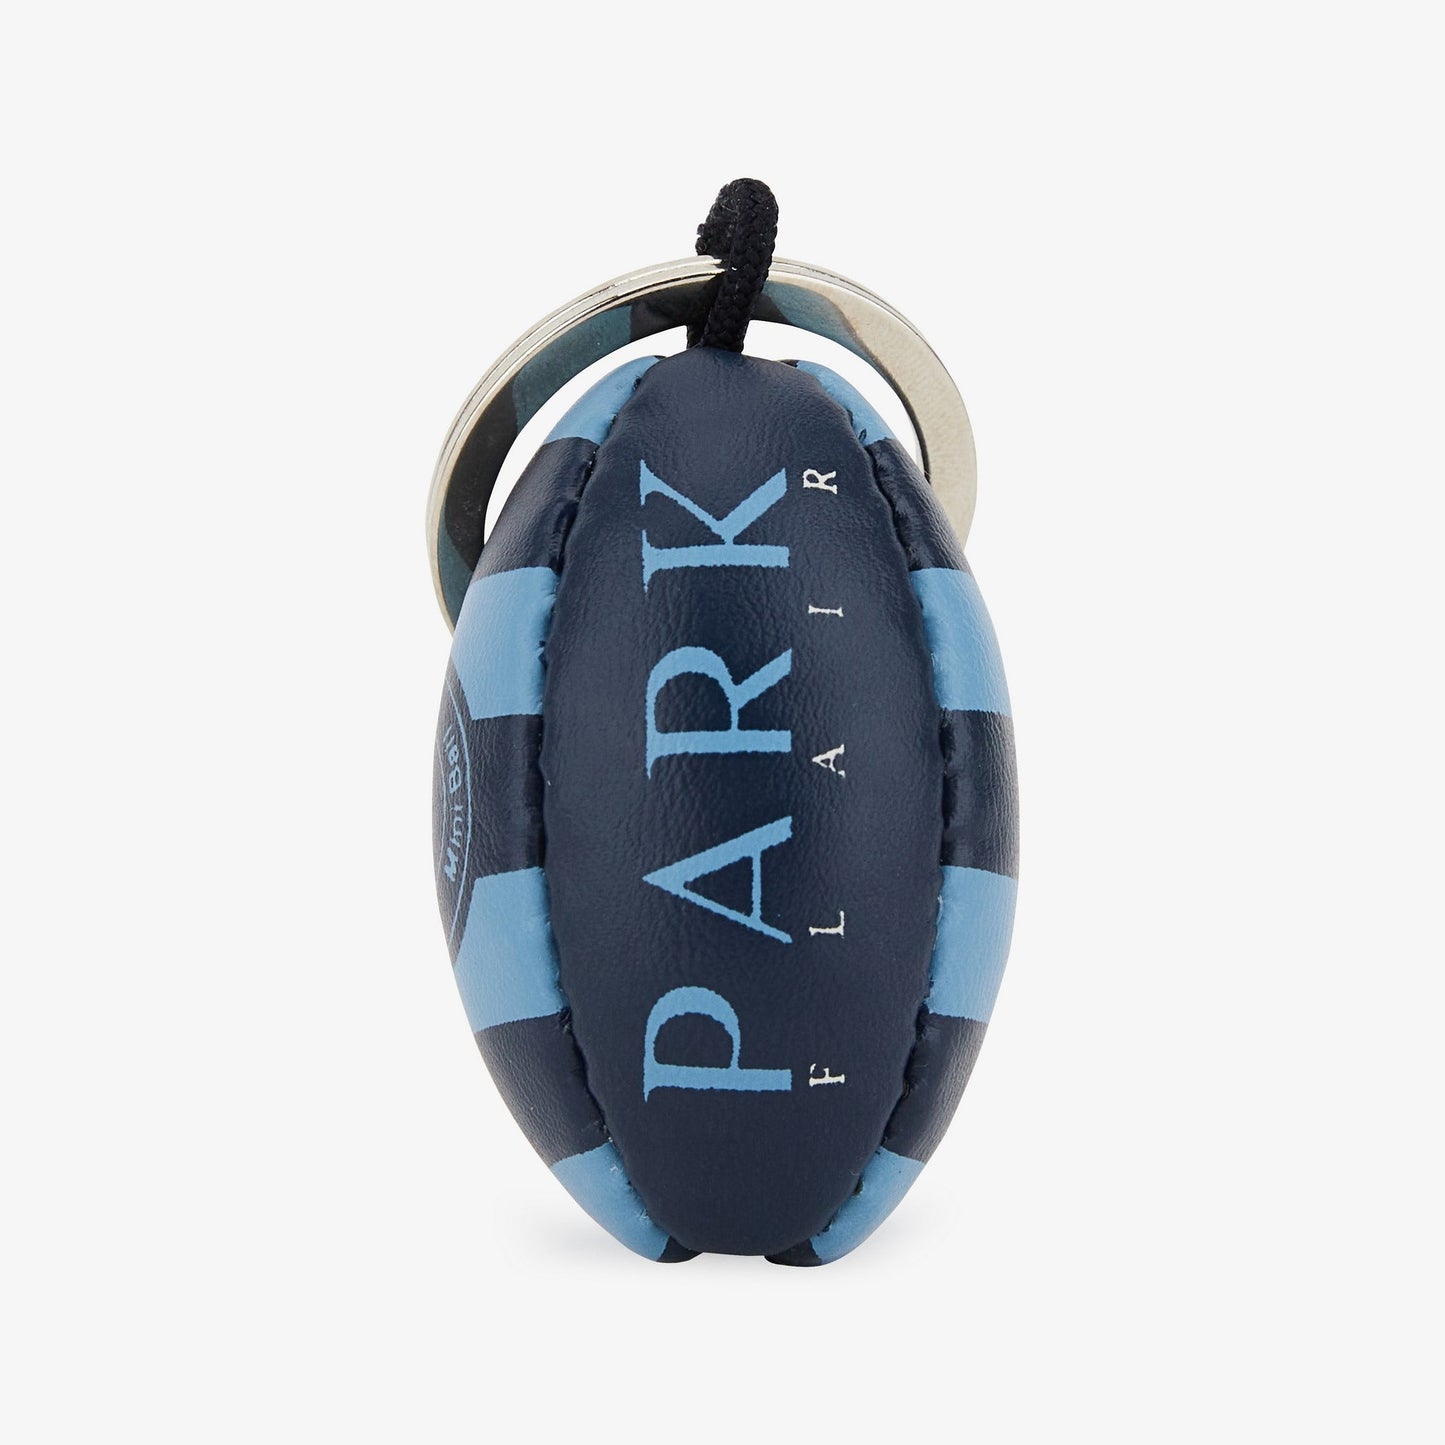 Porte-clés ballon de rugby bleu cerclé et sérigraphié - Image 1